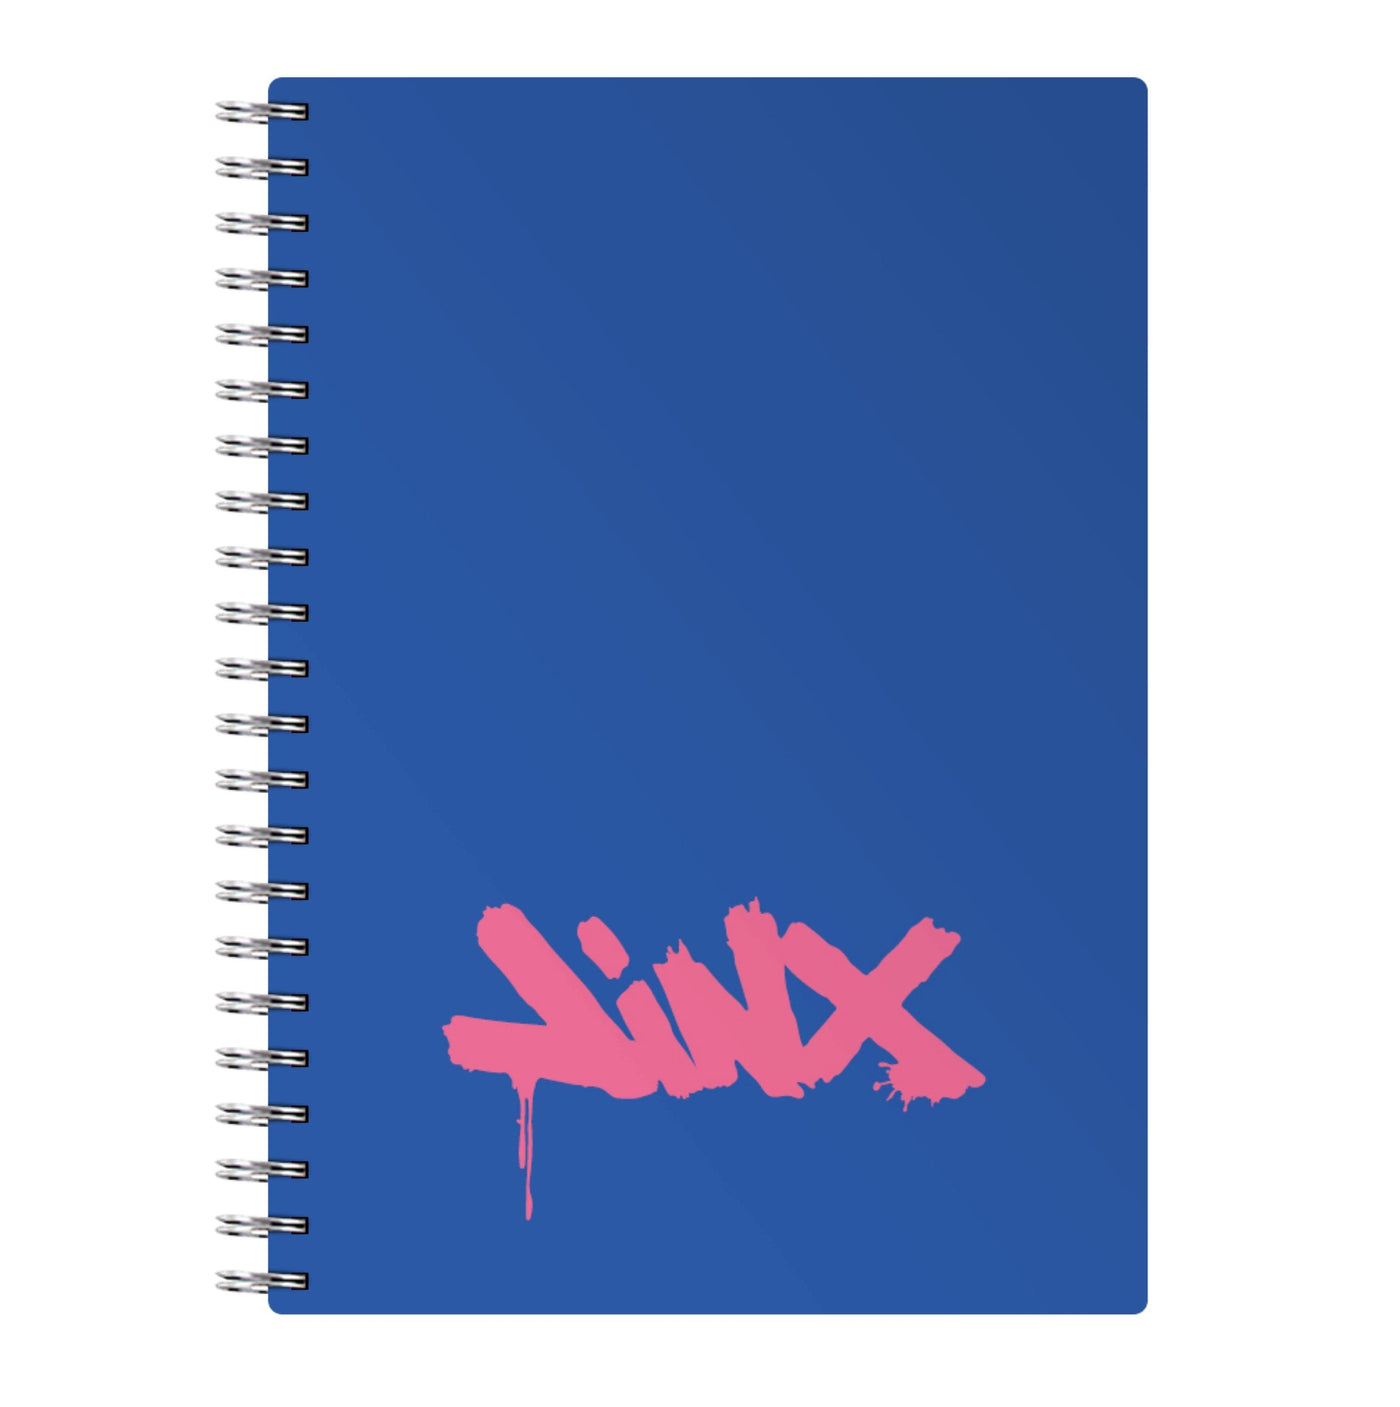 Jinx - League Of Legends Notebook